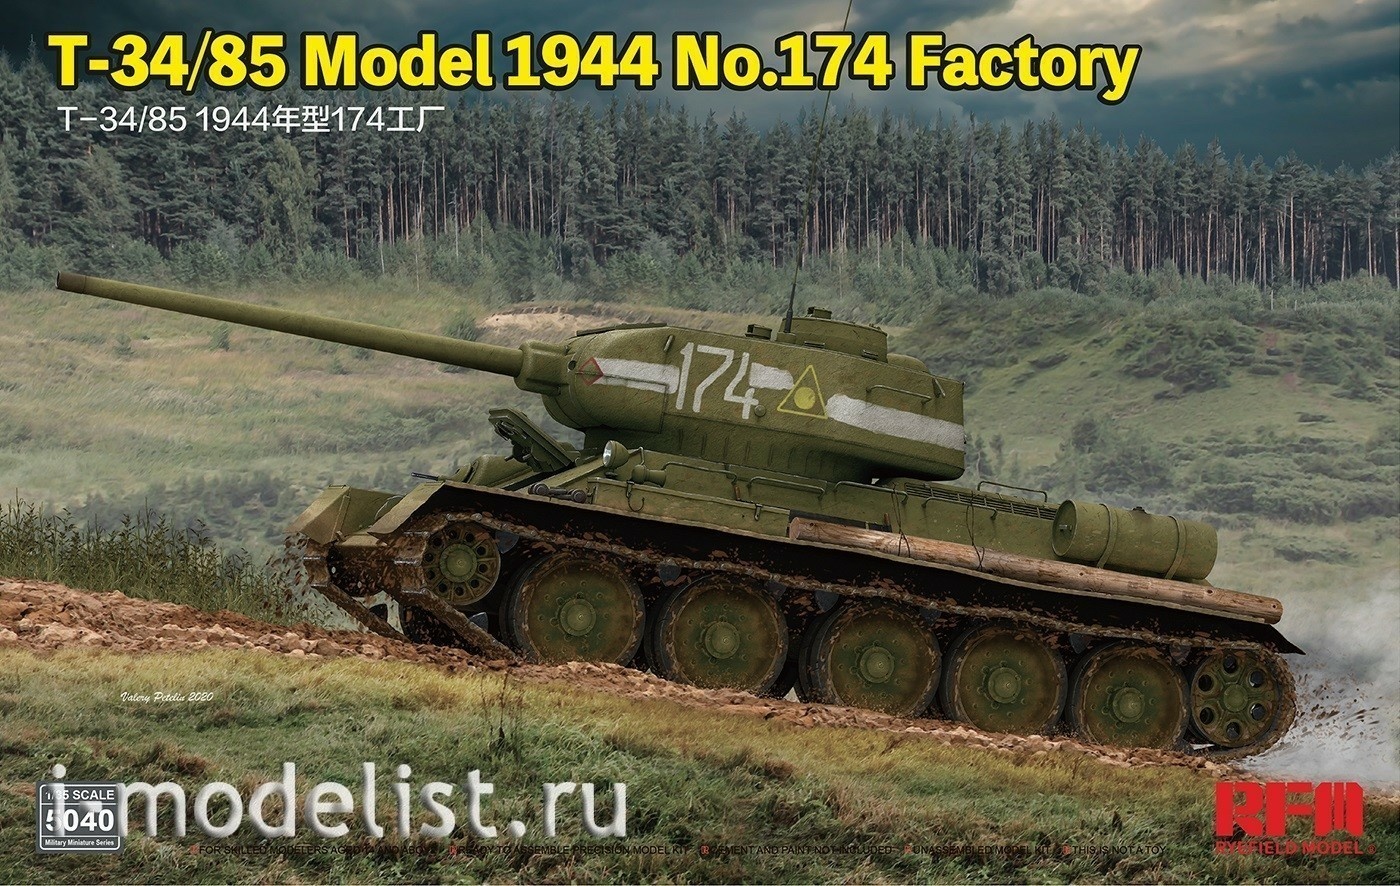 RM-5040 Rye Field Model 1/35 Soviet tank T-34-85 1944 year, factory No. 174 in Omsk